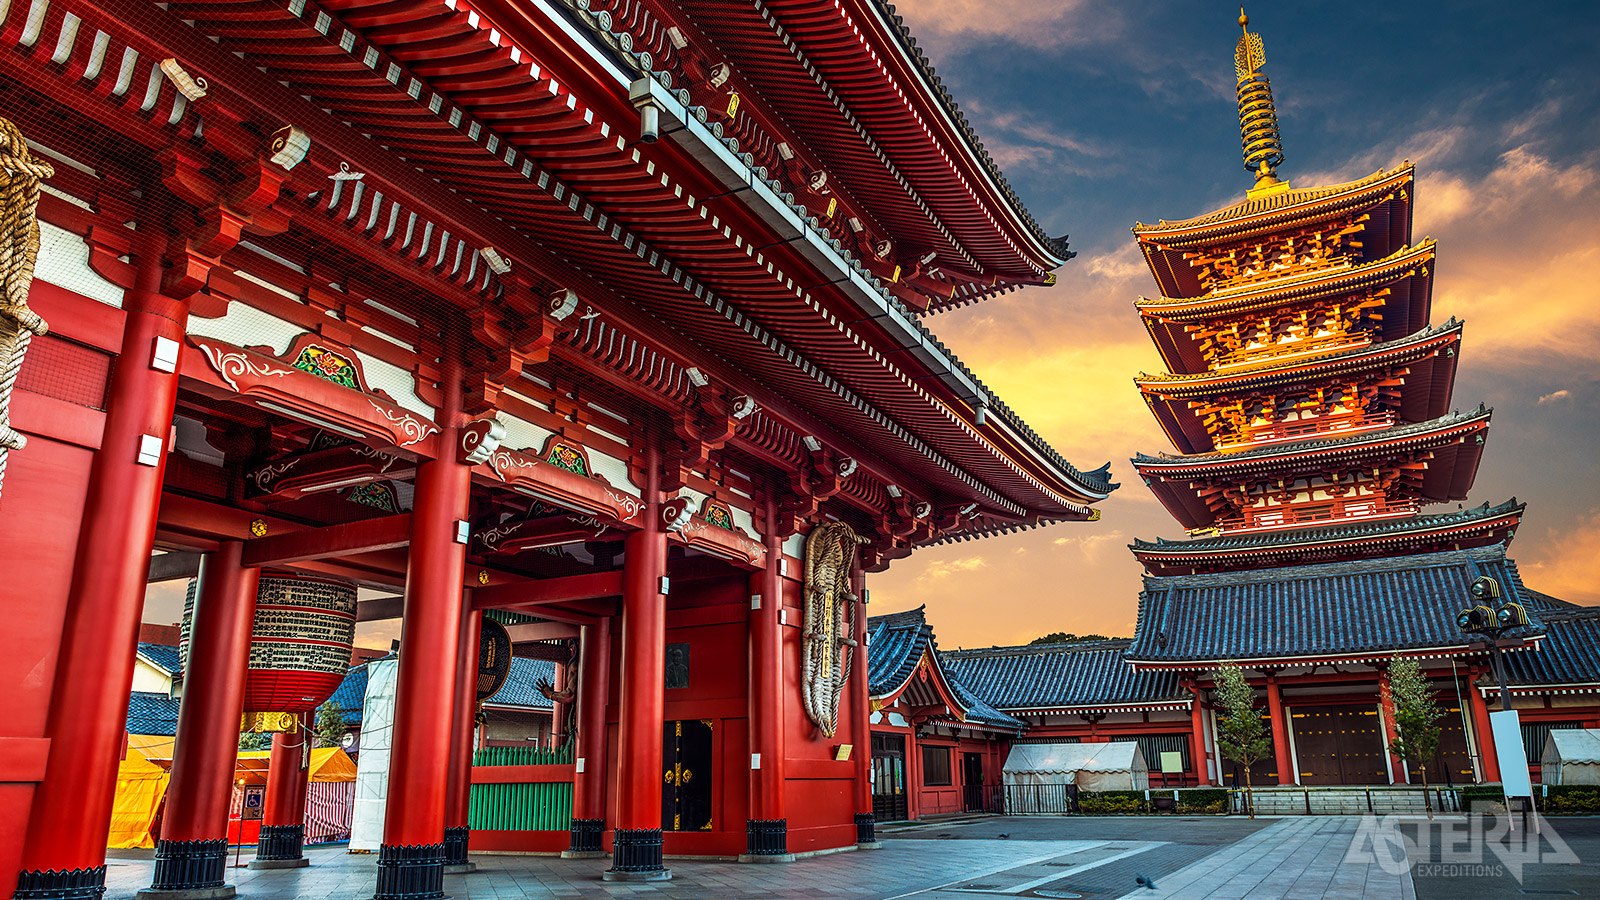 Veruit de oudste en beroemdste tempel in Tokyo is de Senso-ji tempel